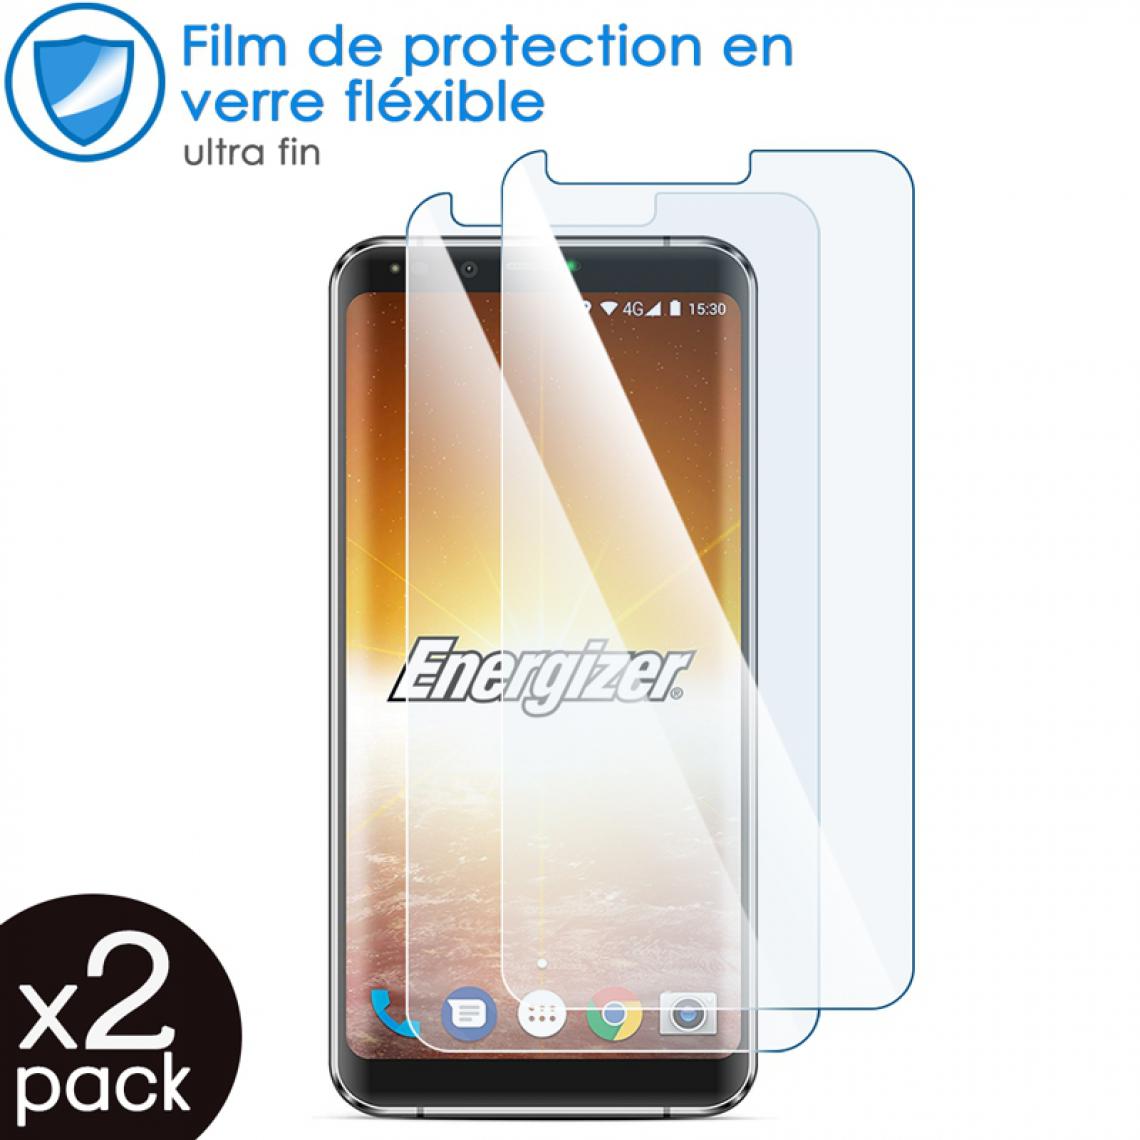 Karylax - Film de Protection d'écran en Verre Fléxible Dureté 9H pour Smartphone Energizer Power Max P600S (Pack x2) - Protection écran smartphone